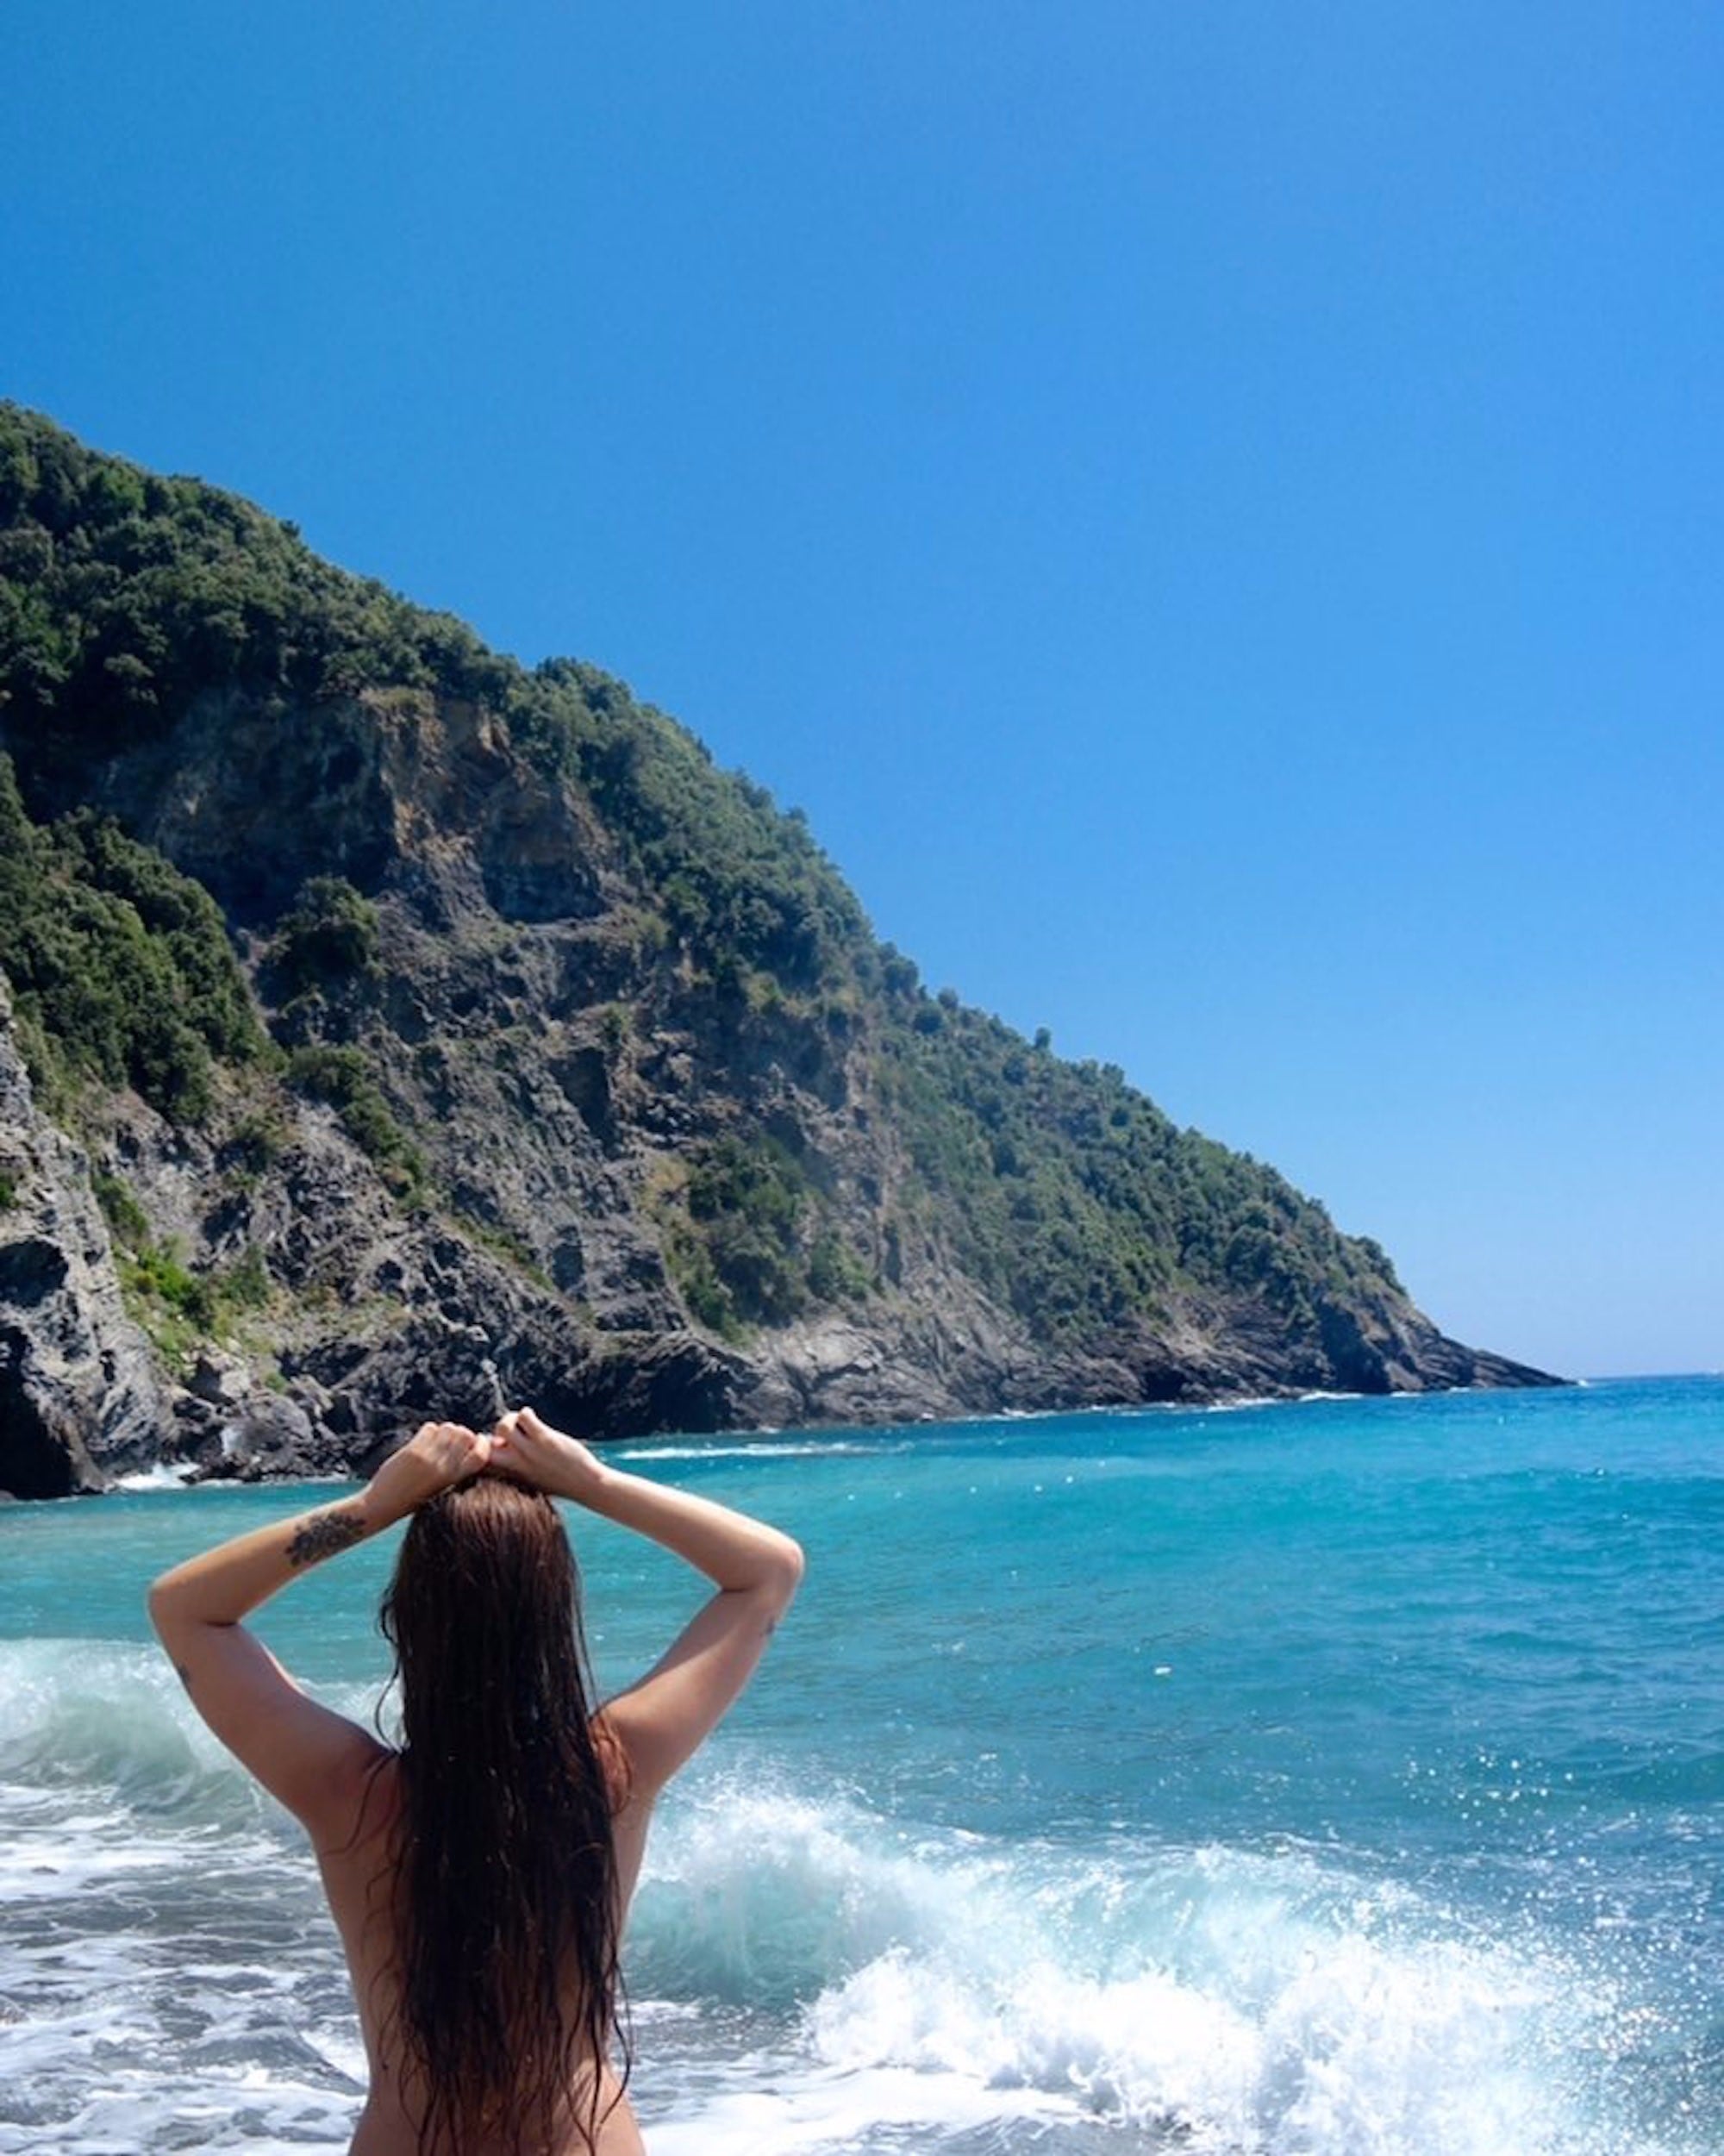 Wife Public Nude Beach Sex - Hidden Nude Beach in Cinque Terre, Italy | POPSUGAR Smart Living